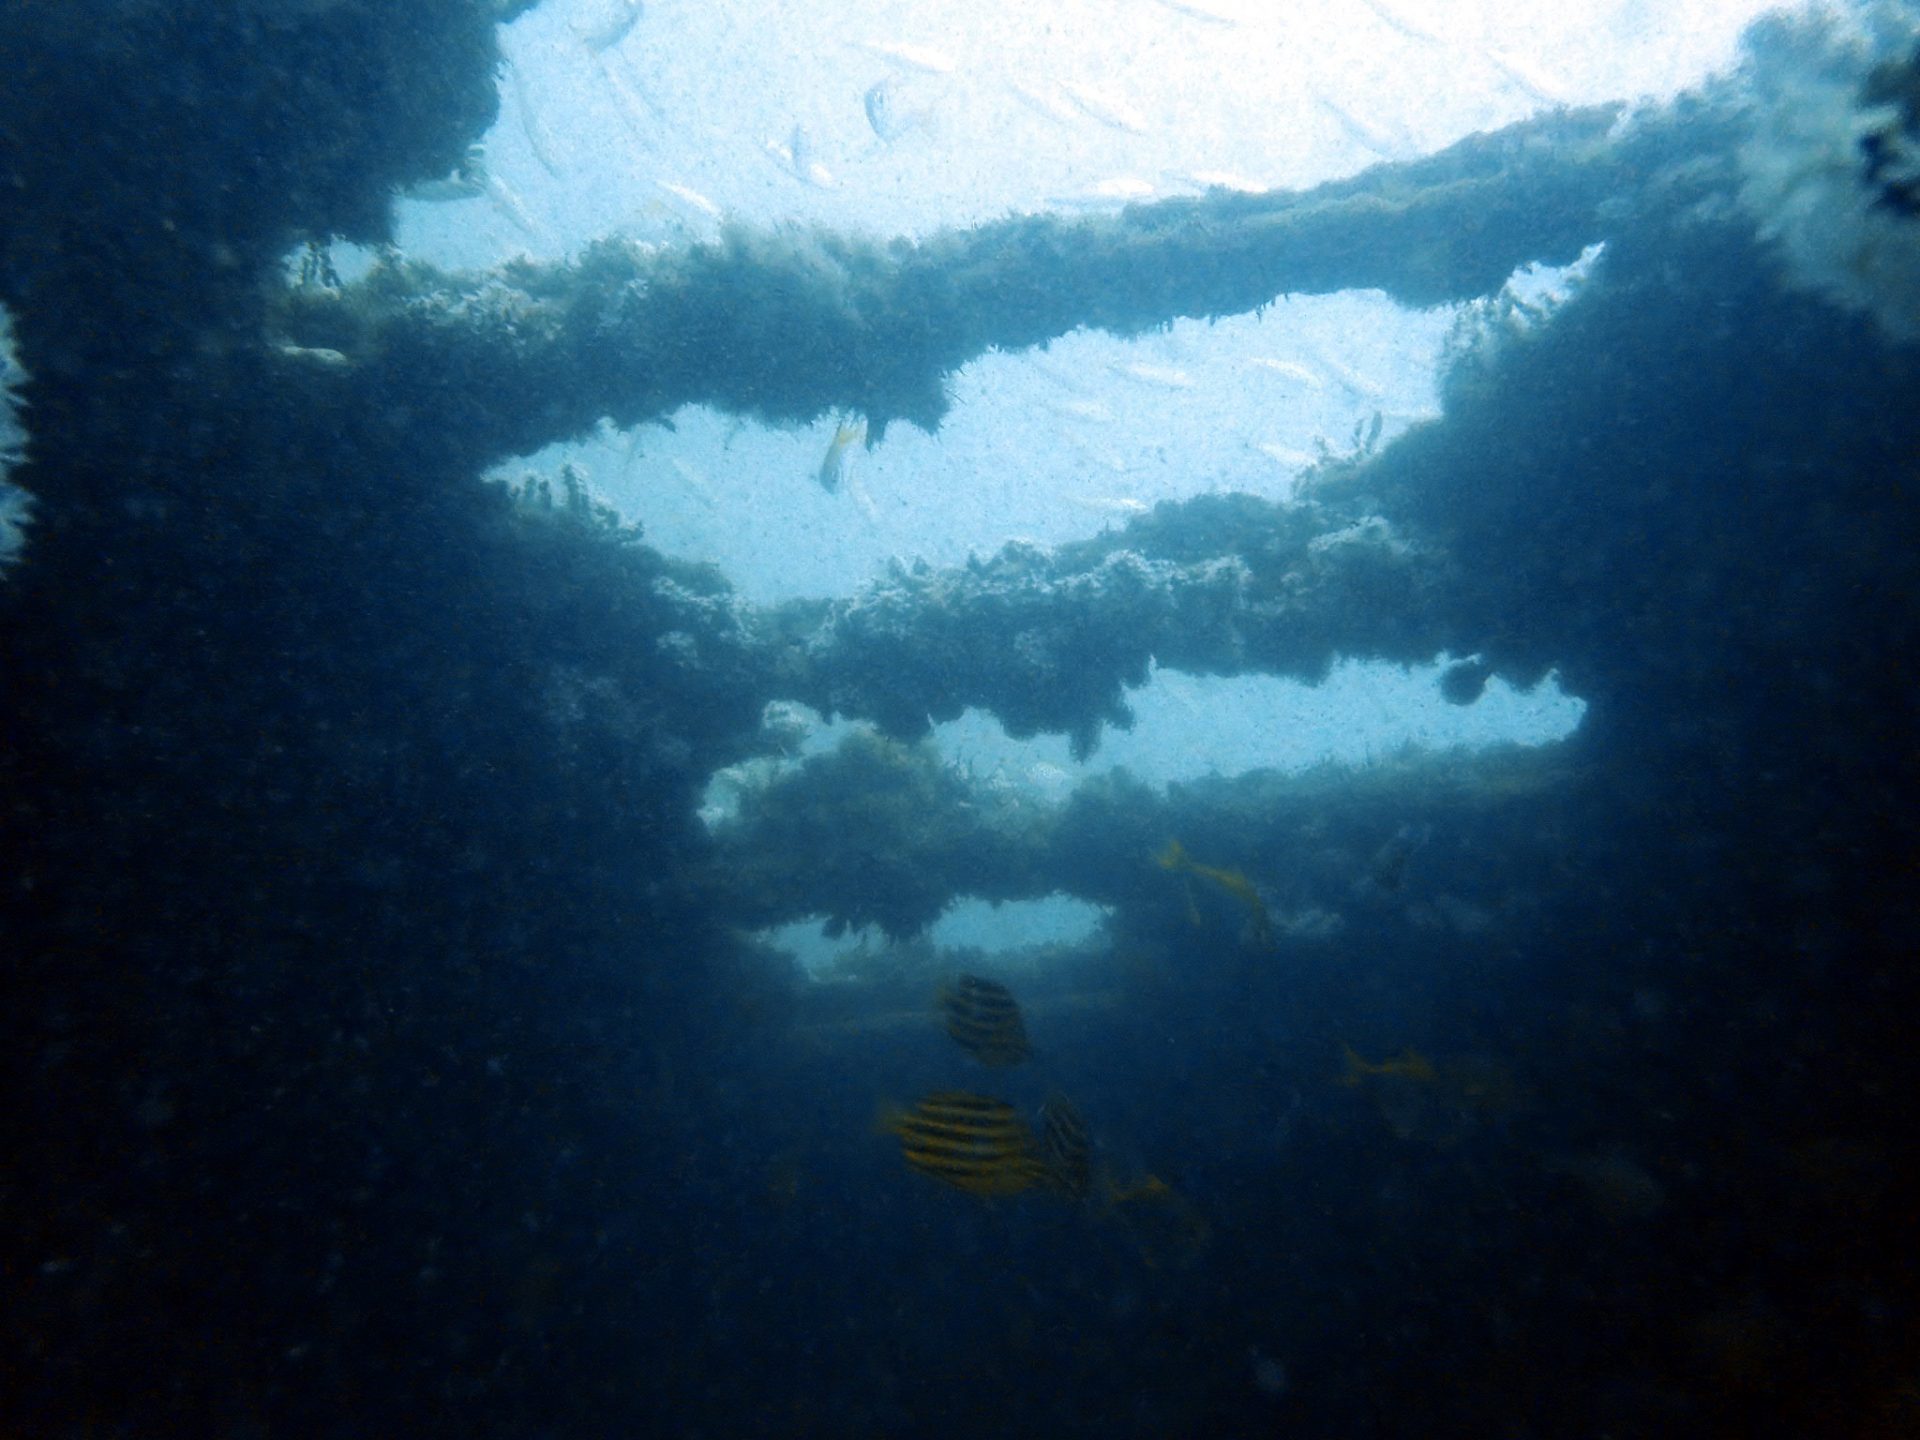 Sea Dragon – Dragin 2 Shipwreck